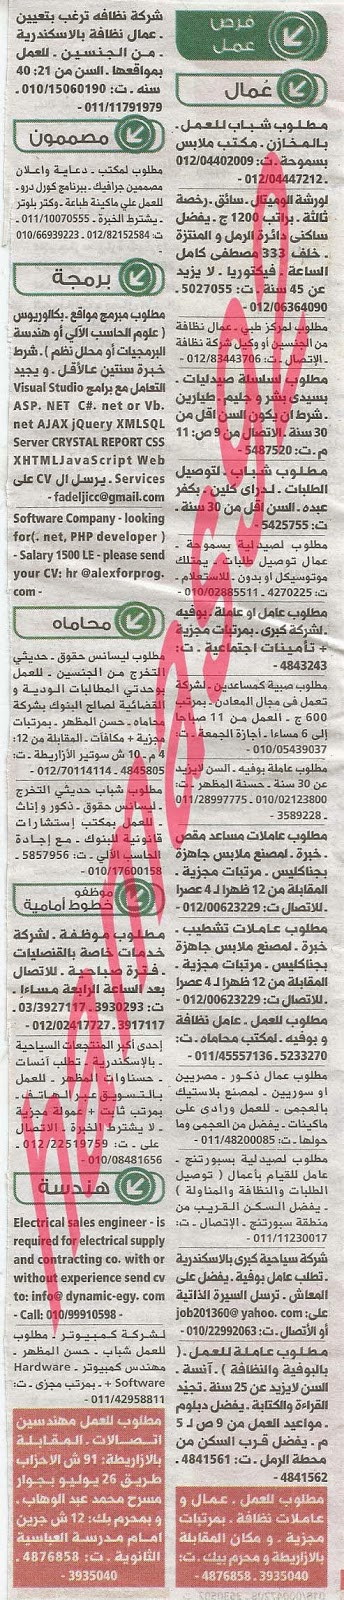 وظائف خالية من جريدة الوسيط الاسكندرية الثلاثاء 01-10-2013 %D9%88+%D8%B3+%D8%B3+11